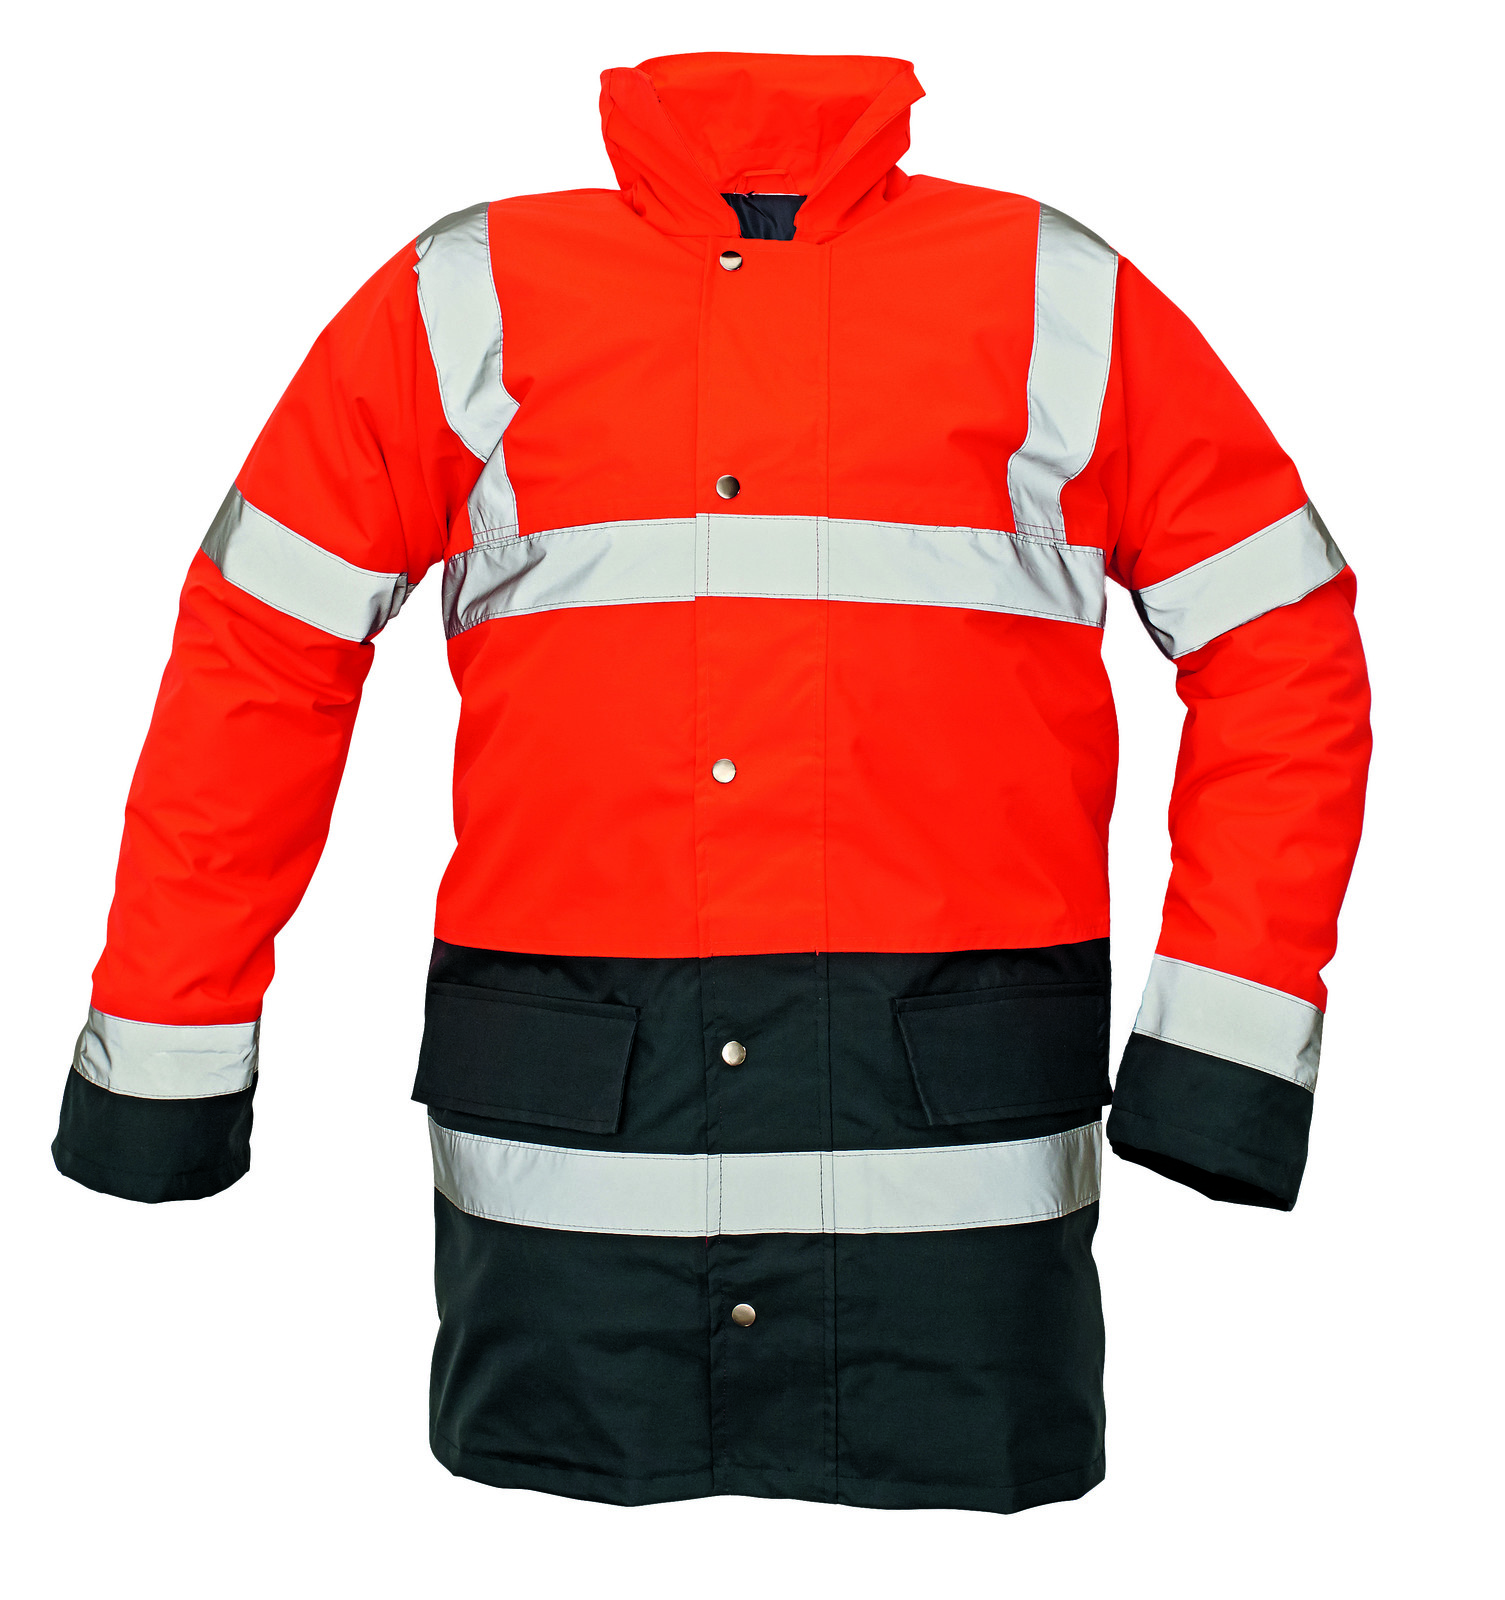 Ľahká zateplená reflexná bunda Sefton - veľkosť: S, farba: červená/navy